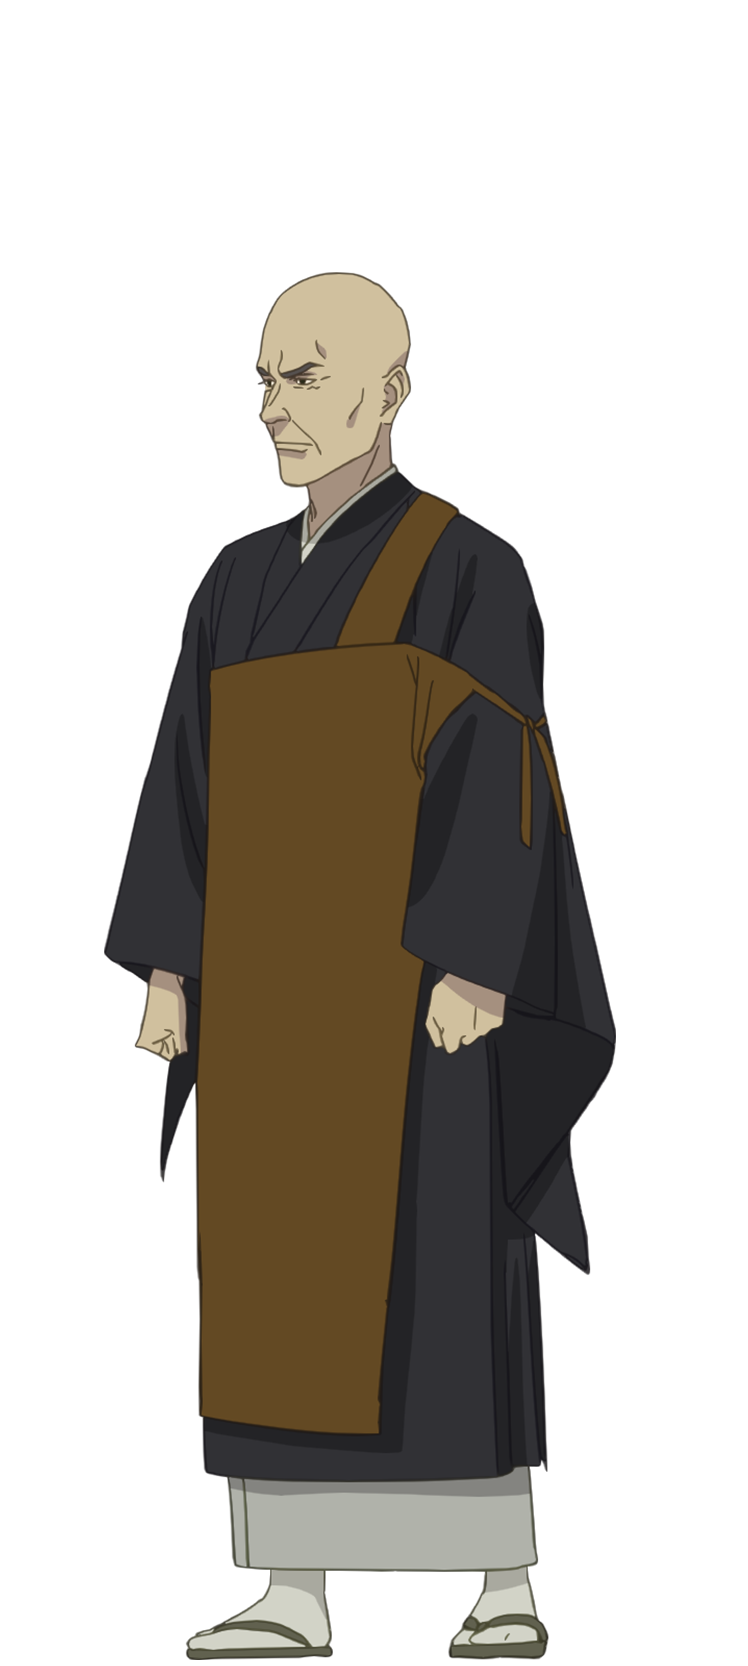 Shinobi no Ittoki - Wikipedia